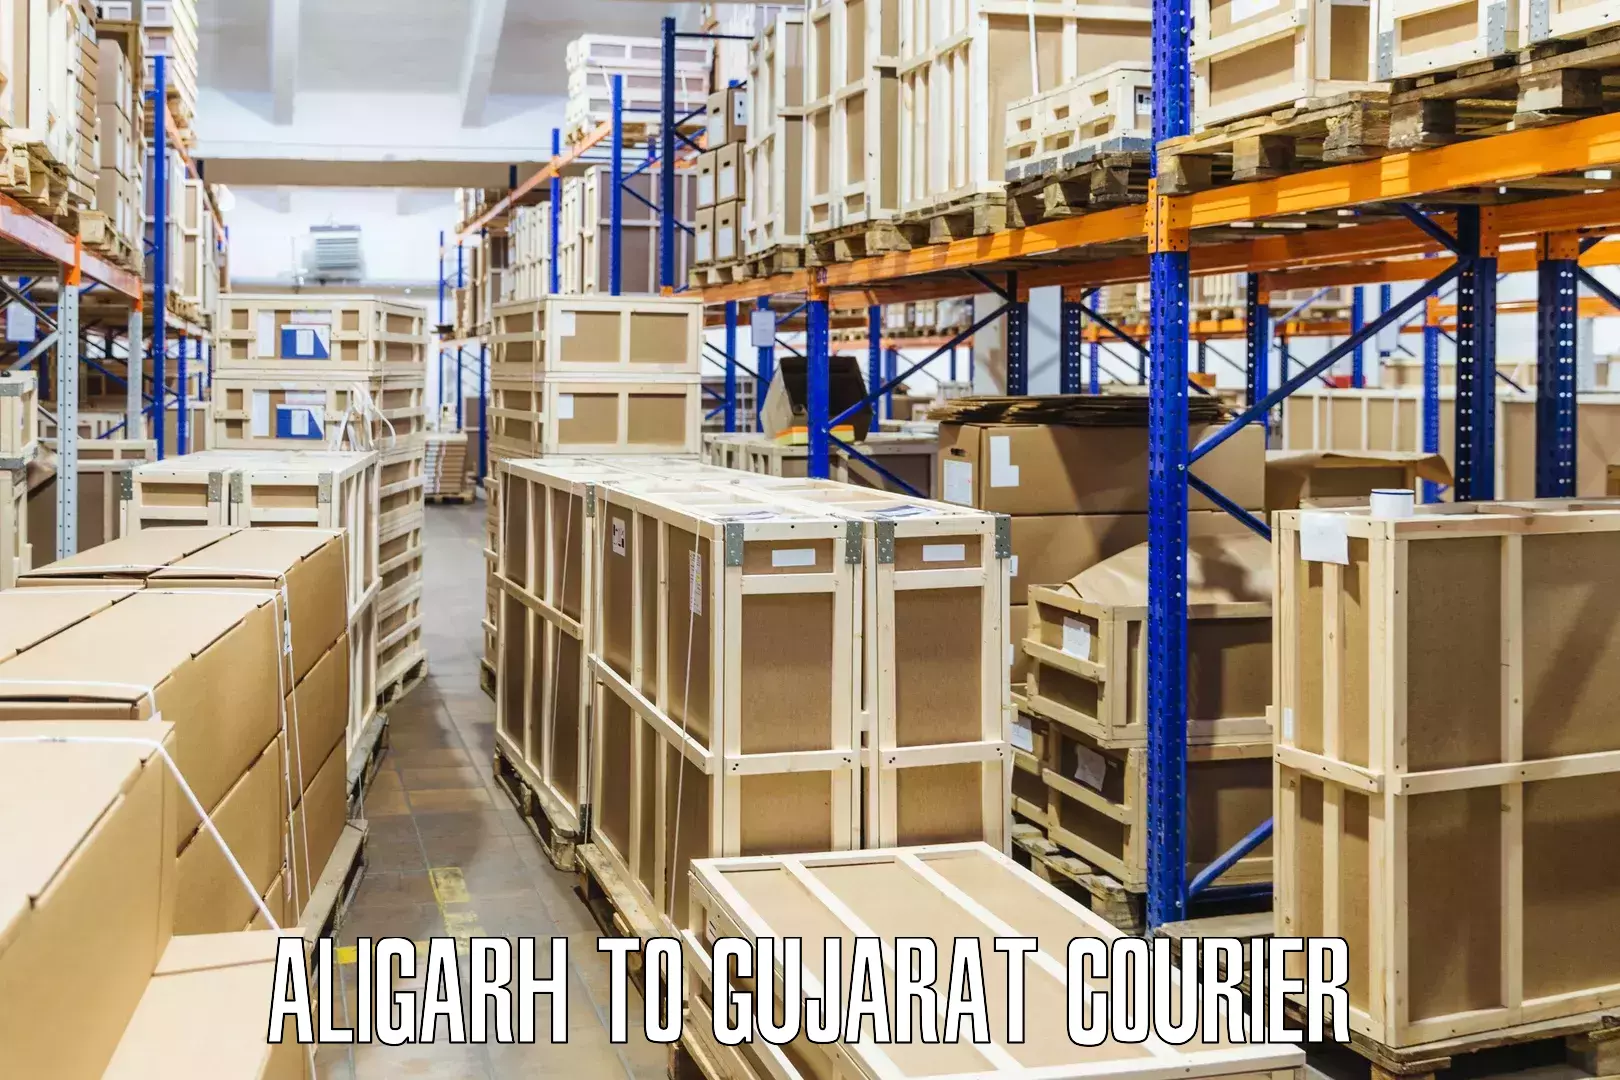 Cargo courier service Aligarh to Dhoraji